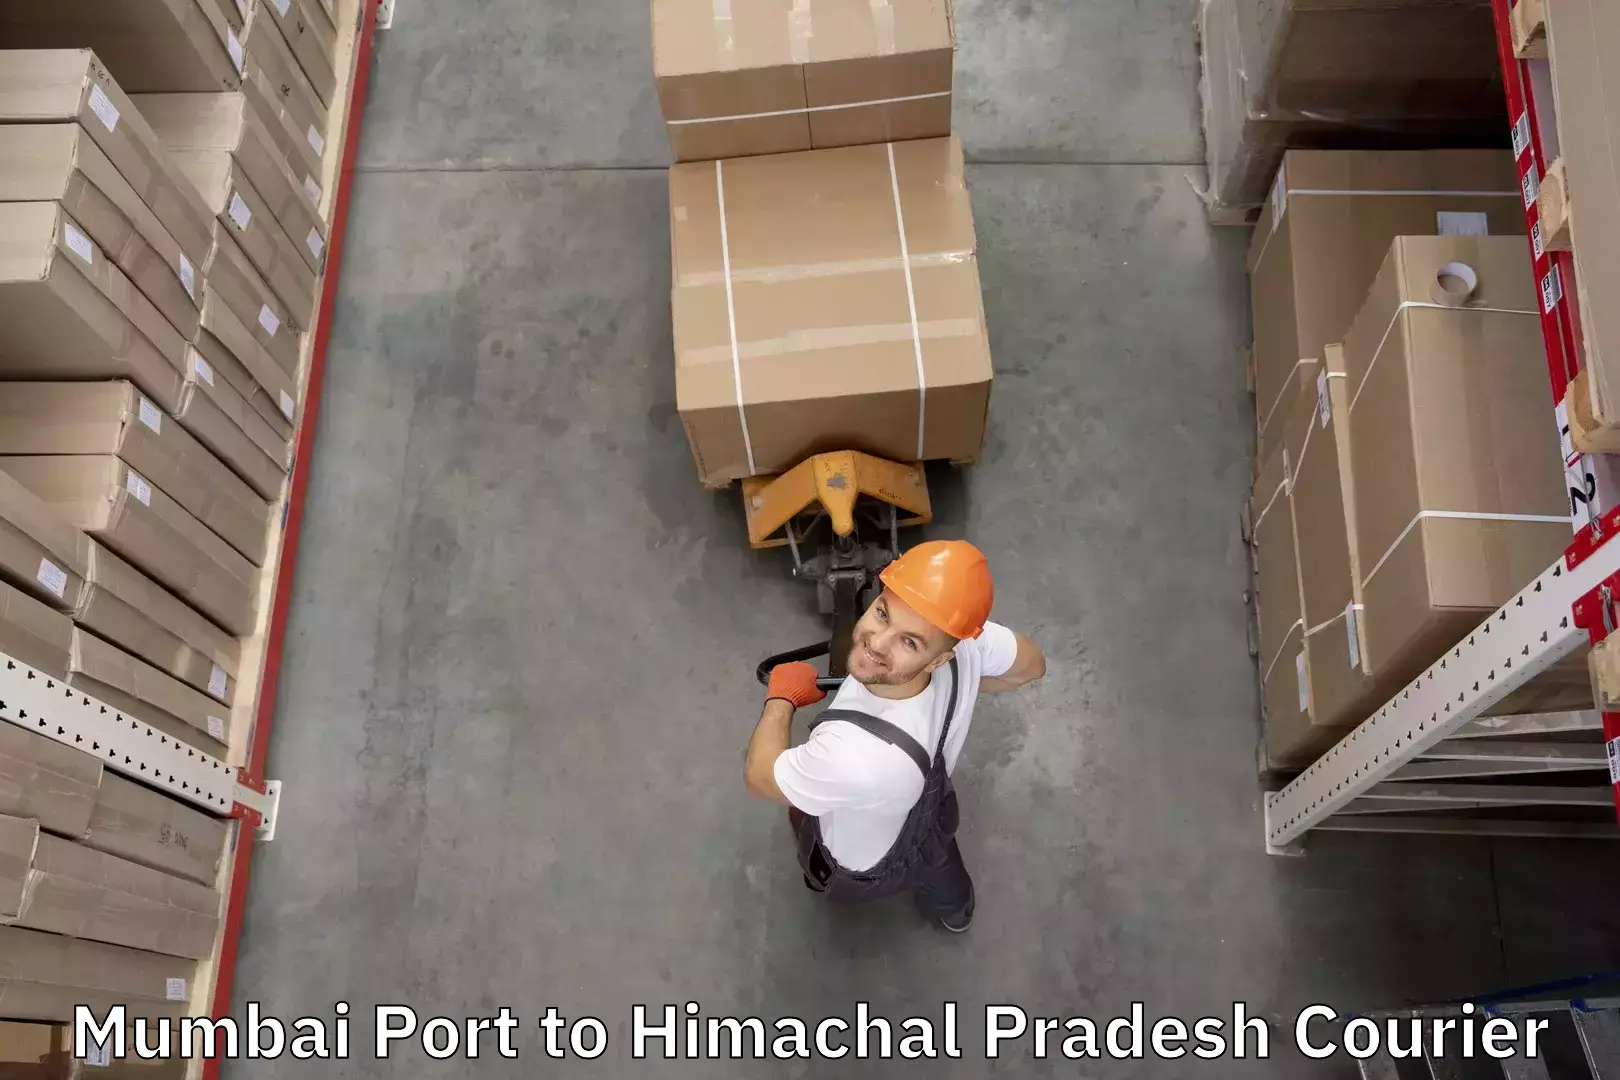 Luggage forwarding service Mumbai Port to Himachal Pradesh